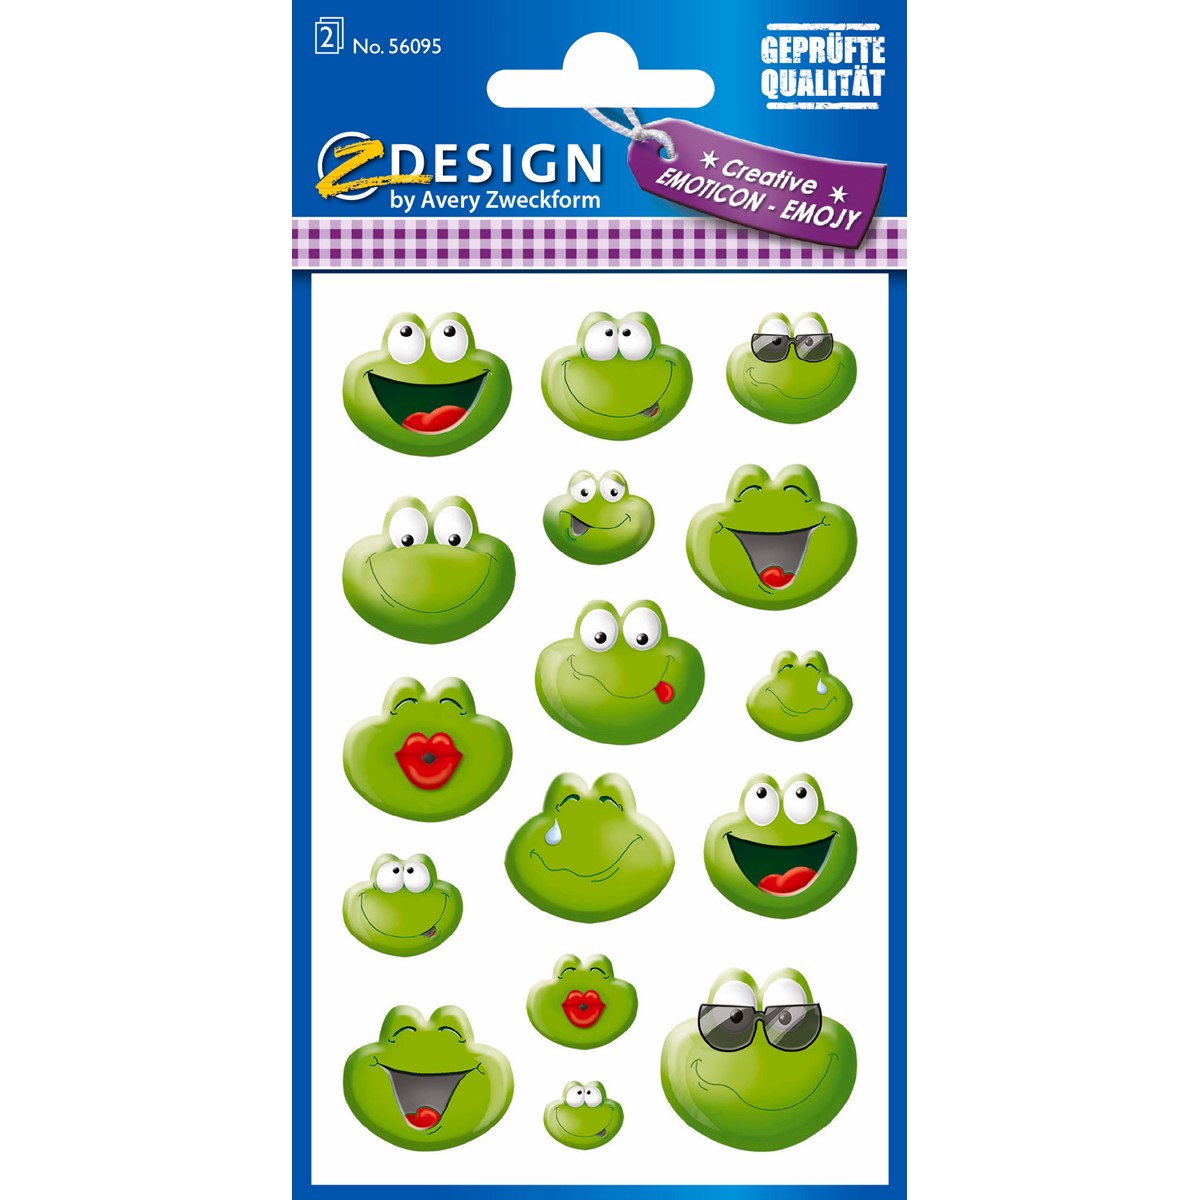 Z-Design 56095 Papier Sticker Emoticon Frosch